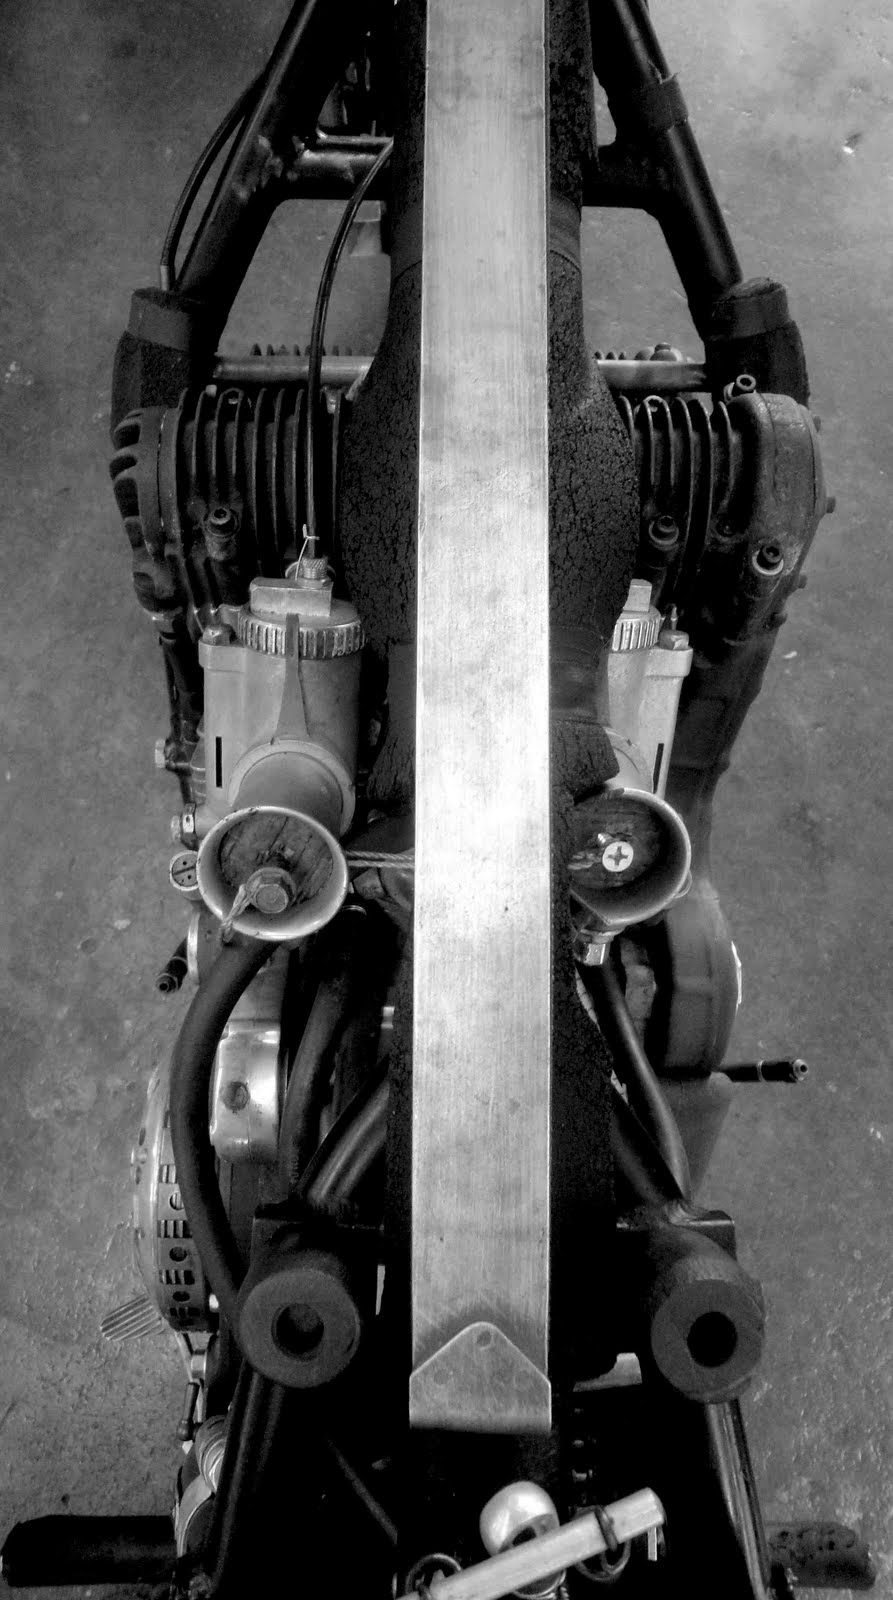 ajs porcupine close up engine